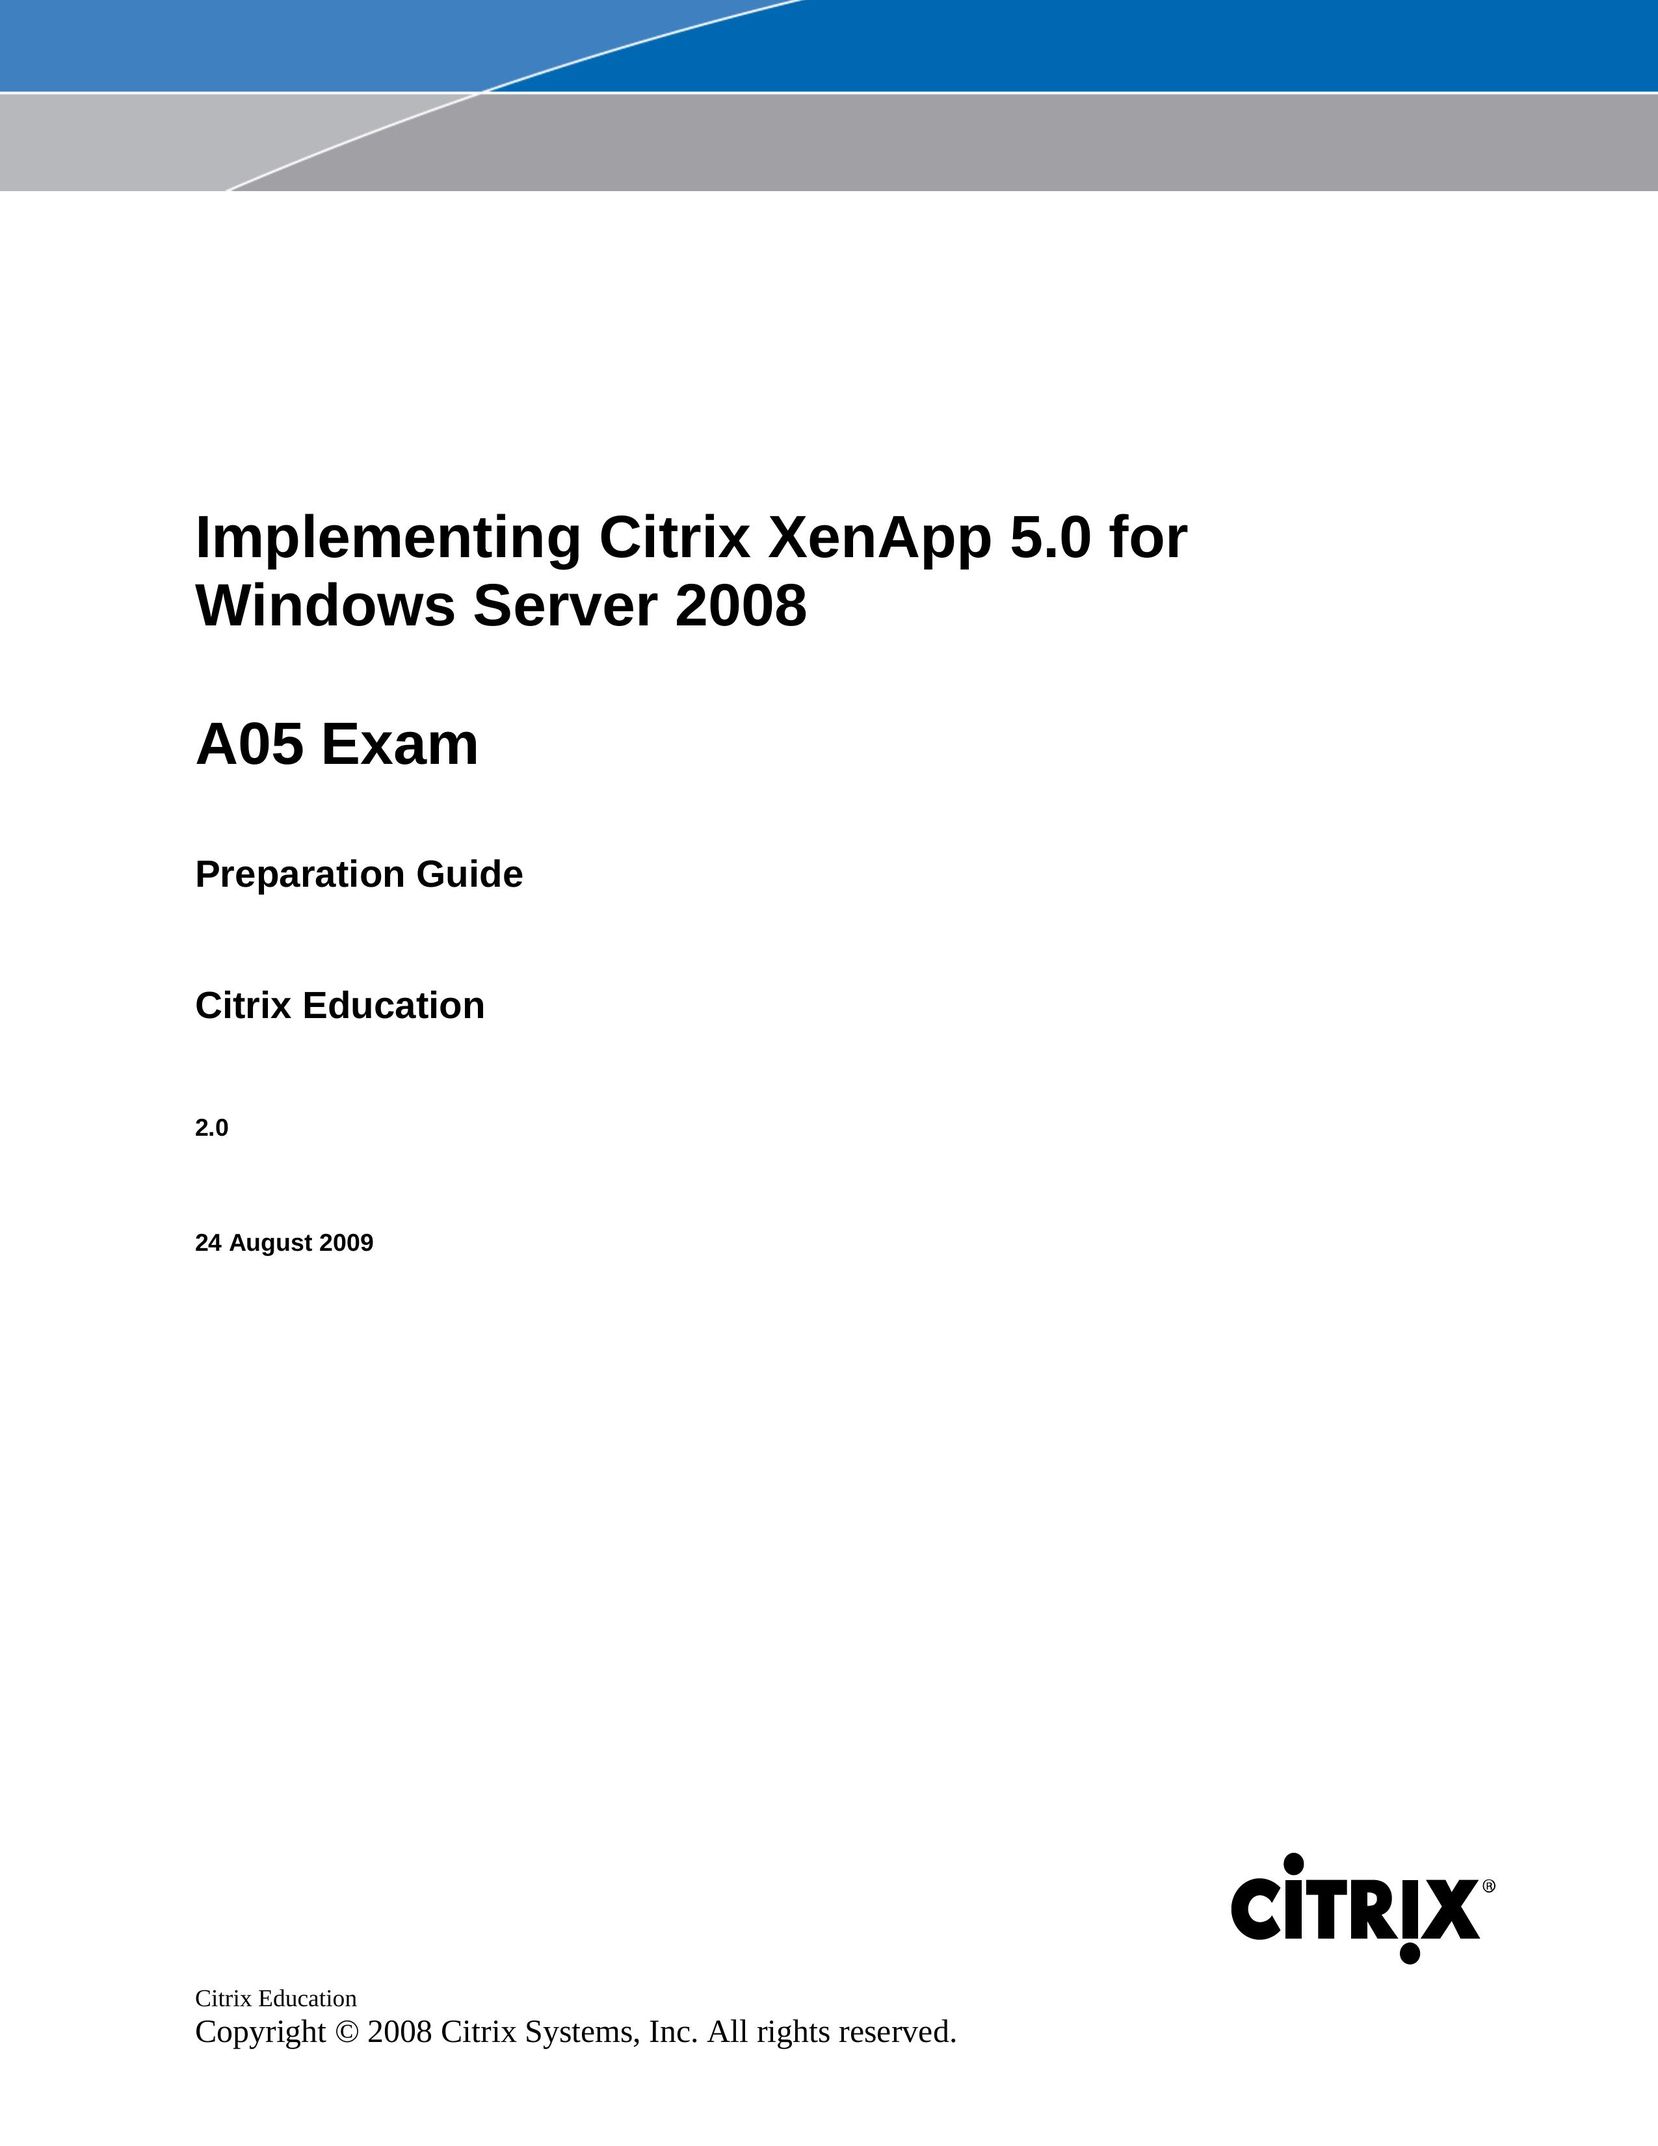 Citrix Systems A05 EXAM Server User Manual